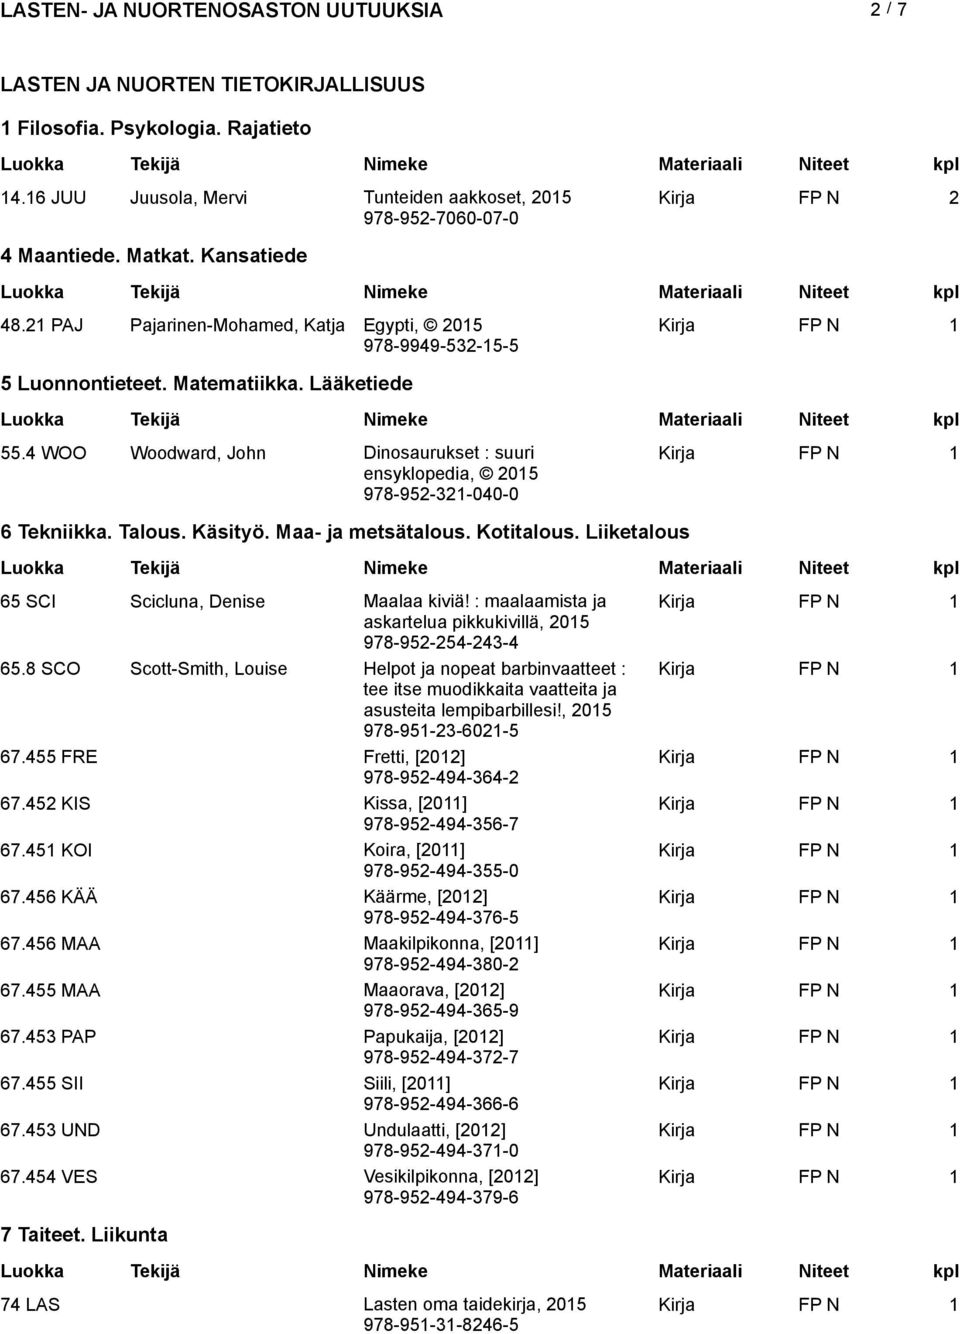 Käsityö. Maa- ja metsätalous. Kotitalous. Liiketalous 65 SCI Scicluna, Denise Maalaa kiviä! : maalaamista ja askartelua pikkukivillä, 978-952-254-243-4 65.